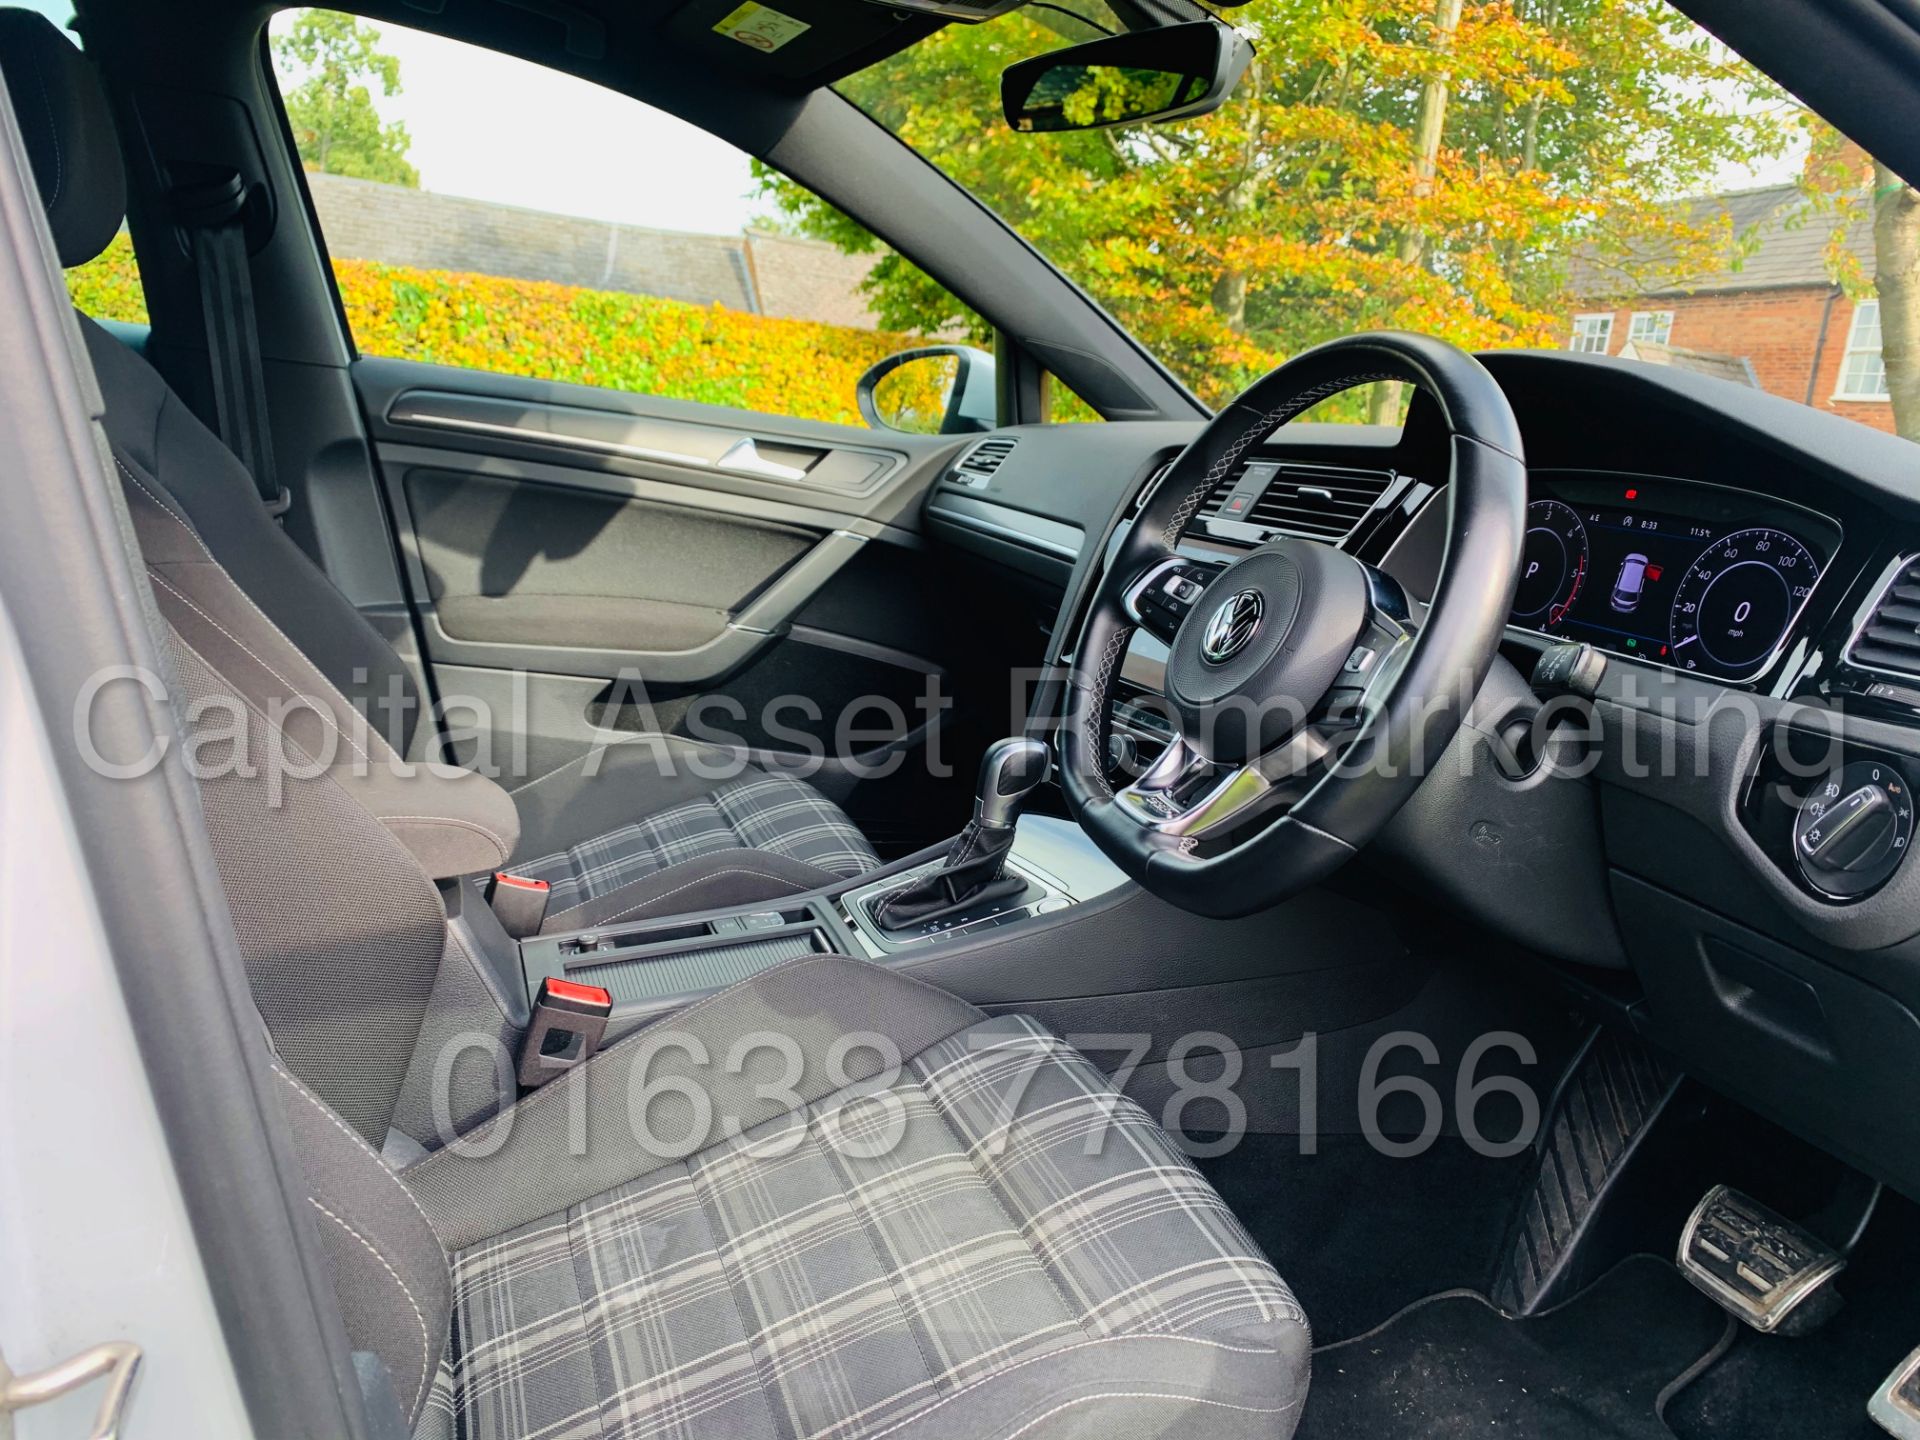 (On Sale) VOLKSWAGEN GOLF *GTD EDITION* 5 DOOR (2018 - NEW MODEL) '2.0 TDI - 184 BHP - AUTO DSG' - Image 37 of 51